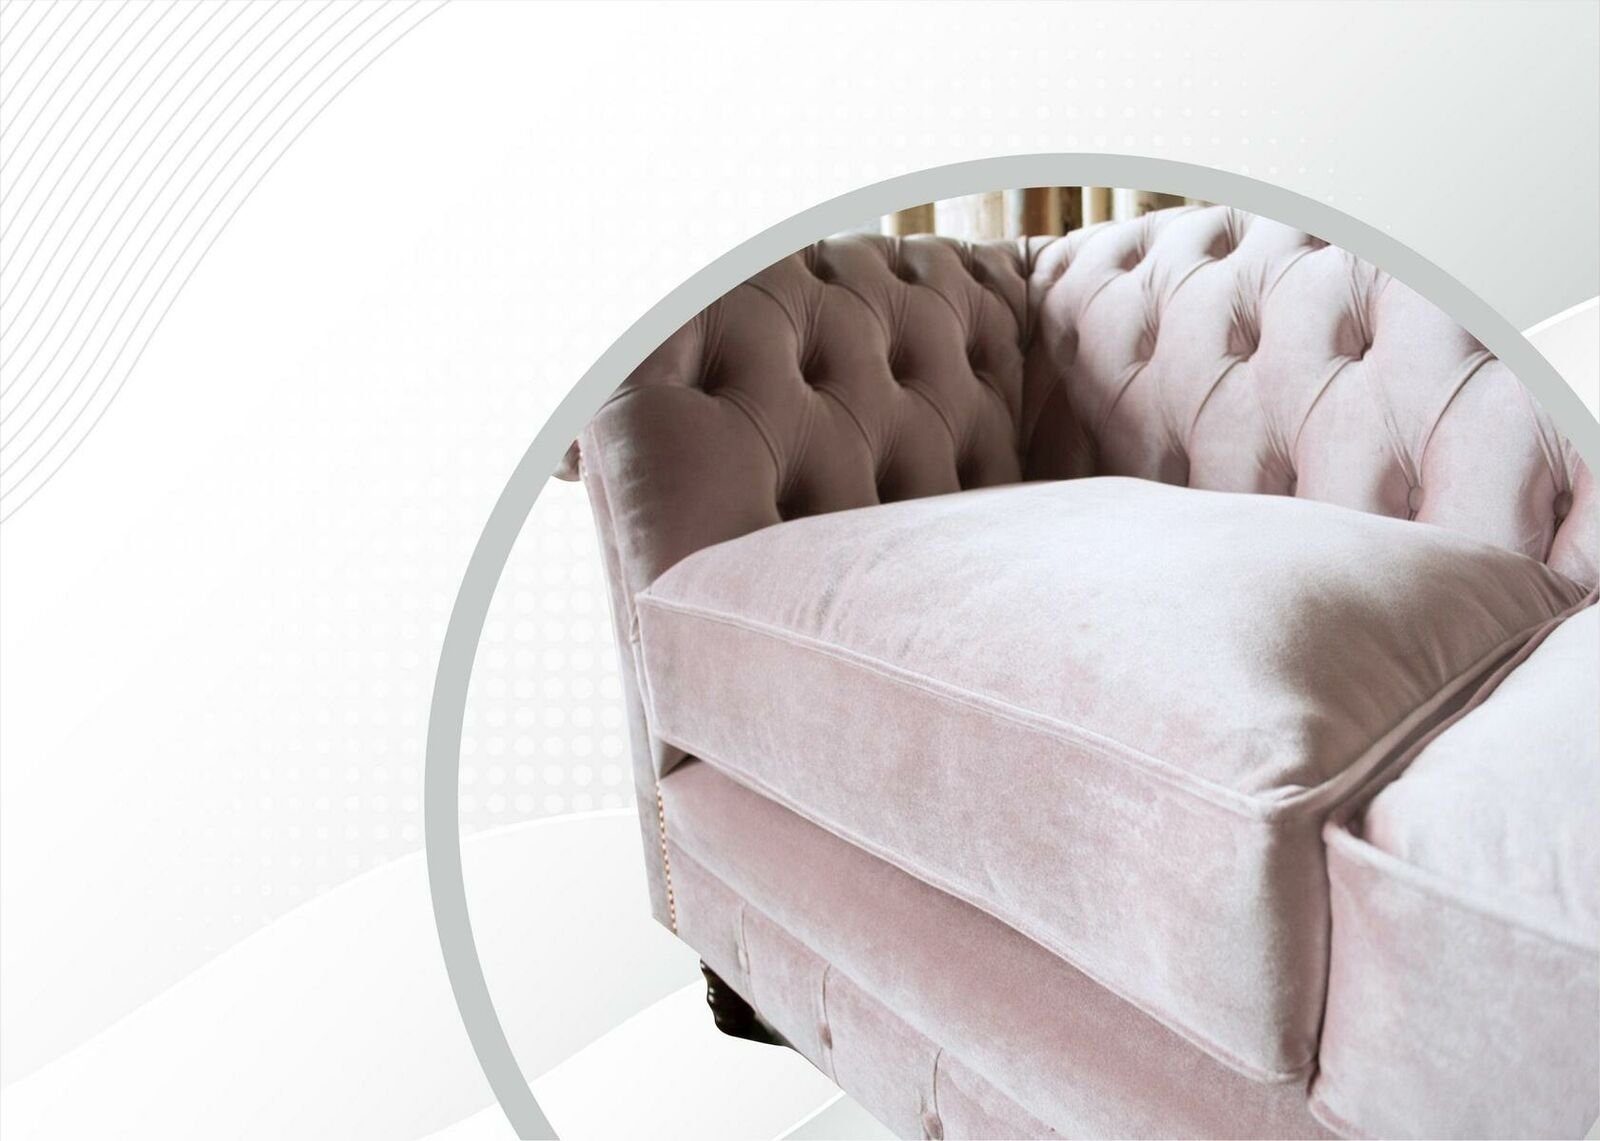 Neuer 3-er, Europe Rosa Dreisitzer Möbel Design Made in JVmoebel Luxus Chesterfield Chesterfield-Sofa